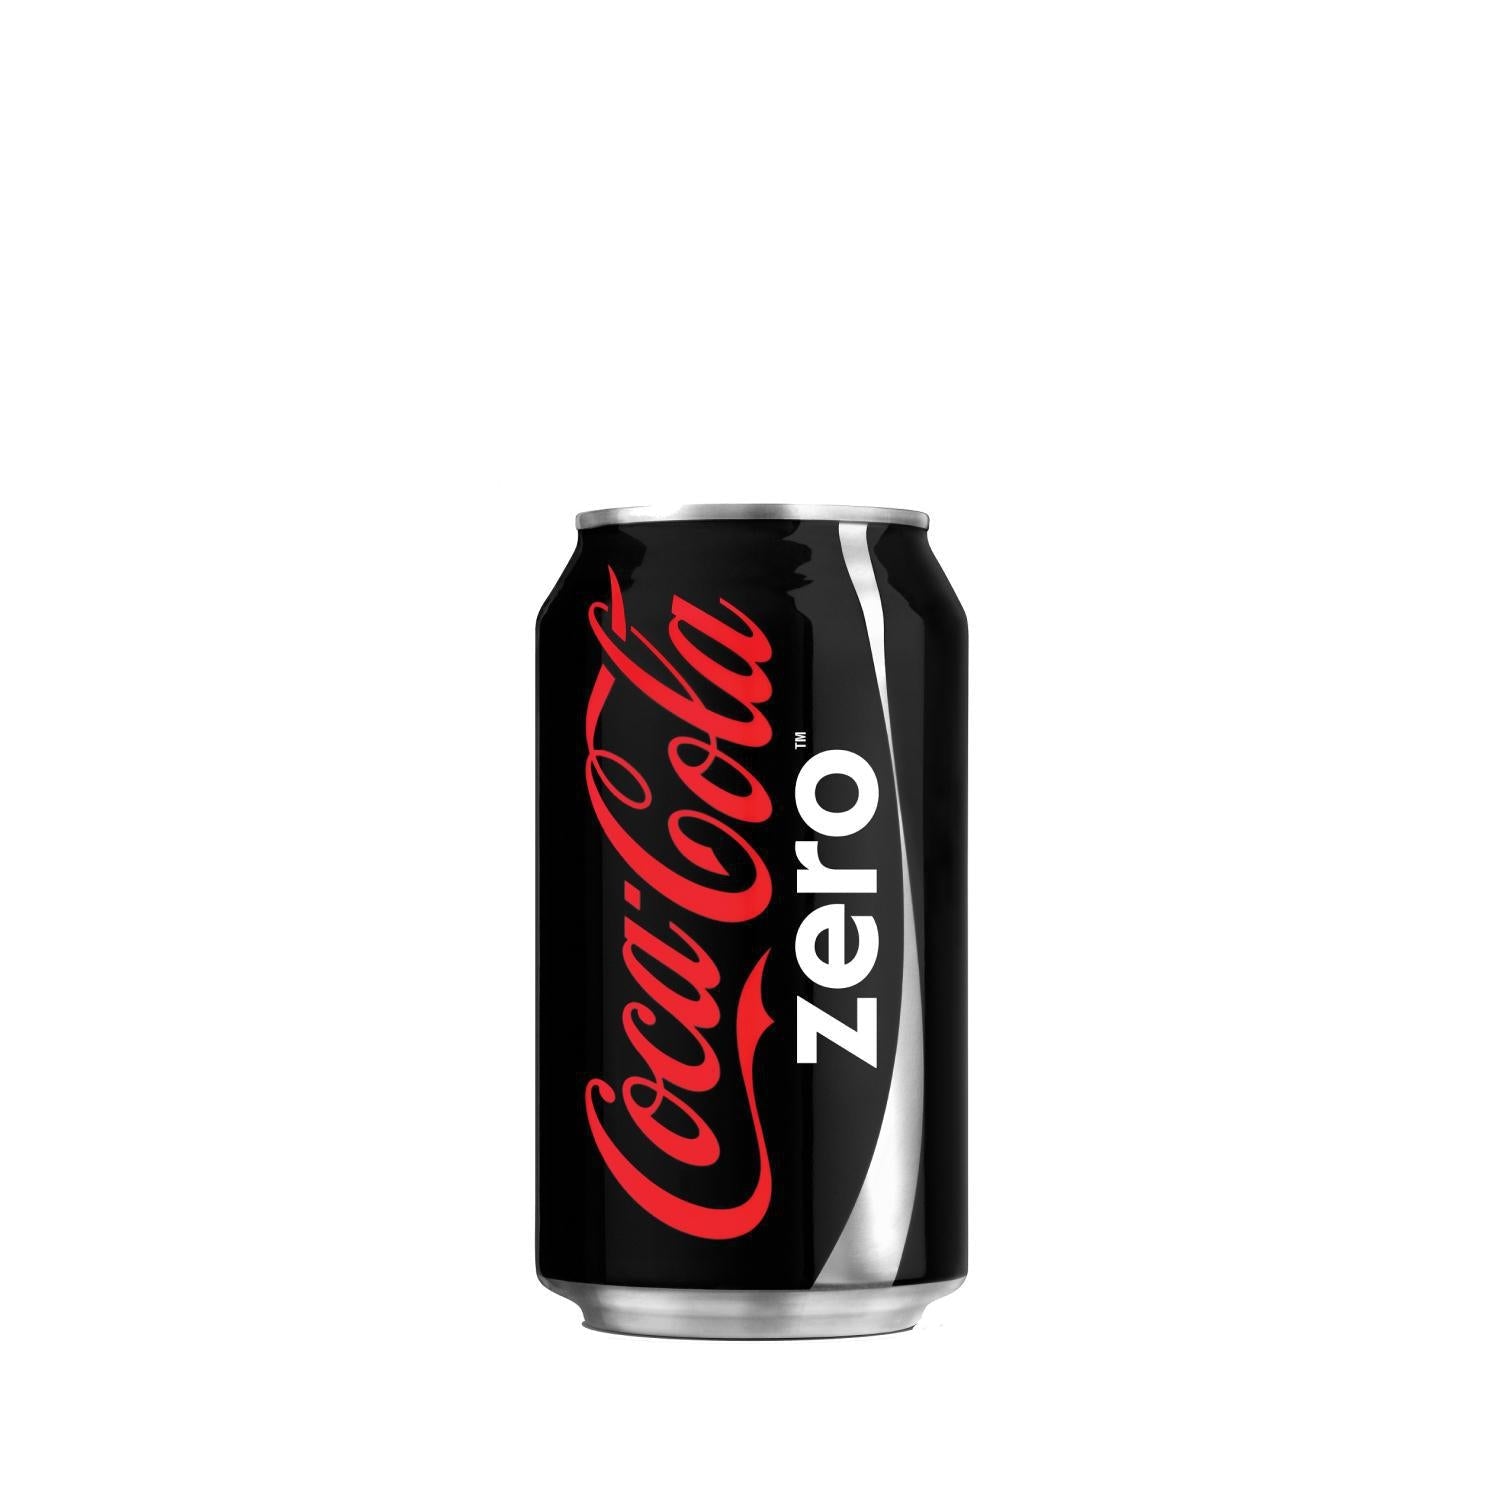 Coca-Cola - Coke Zero